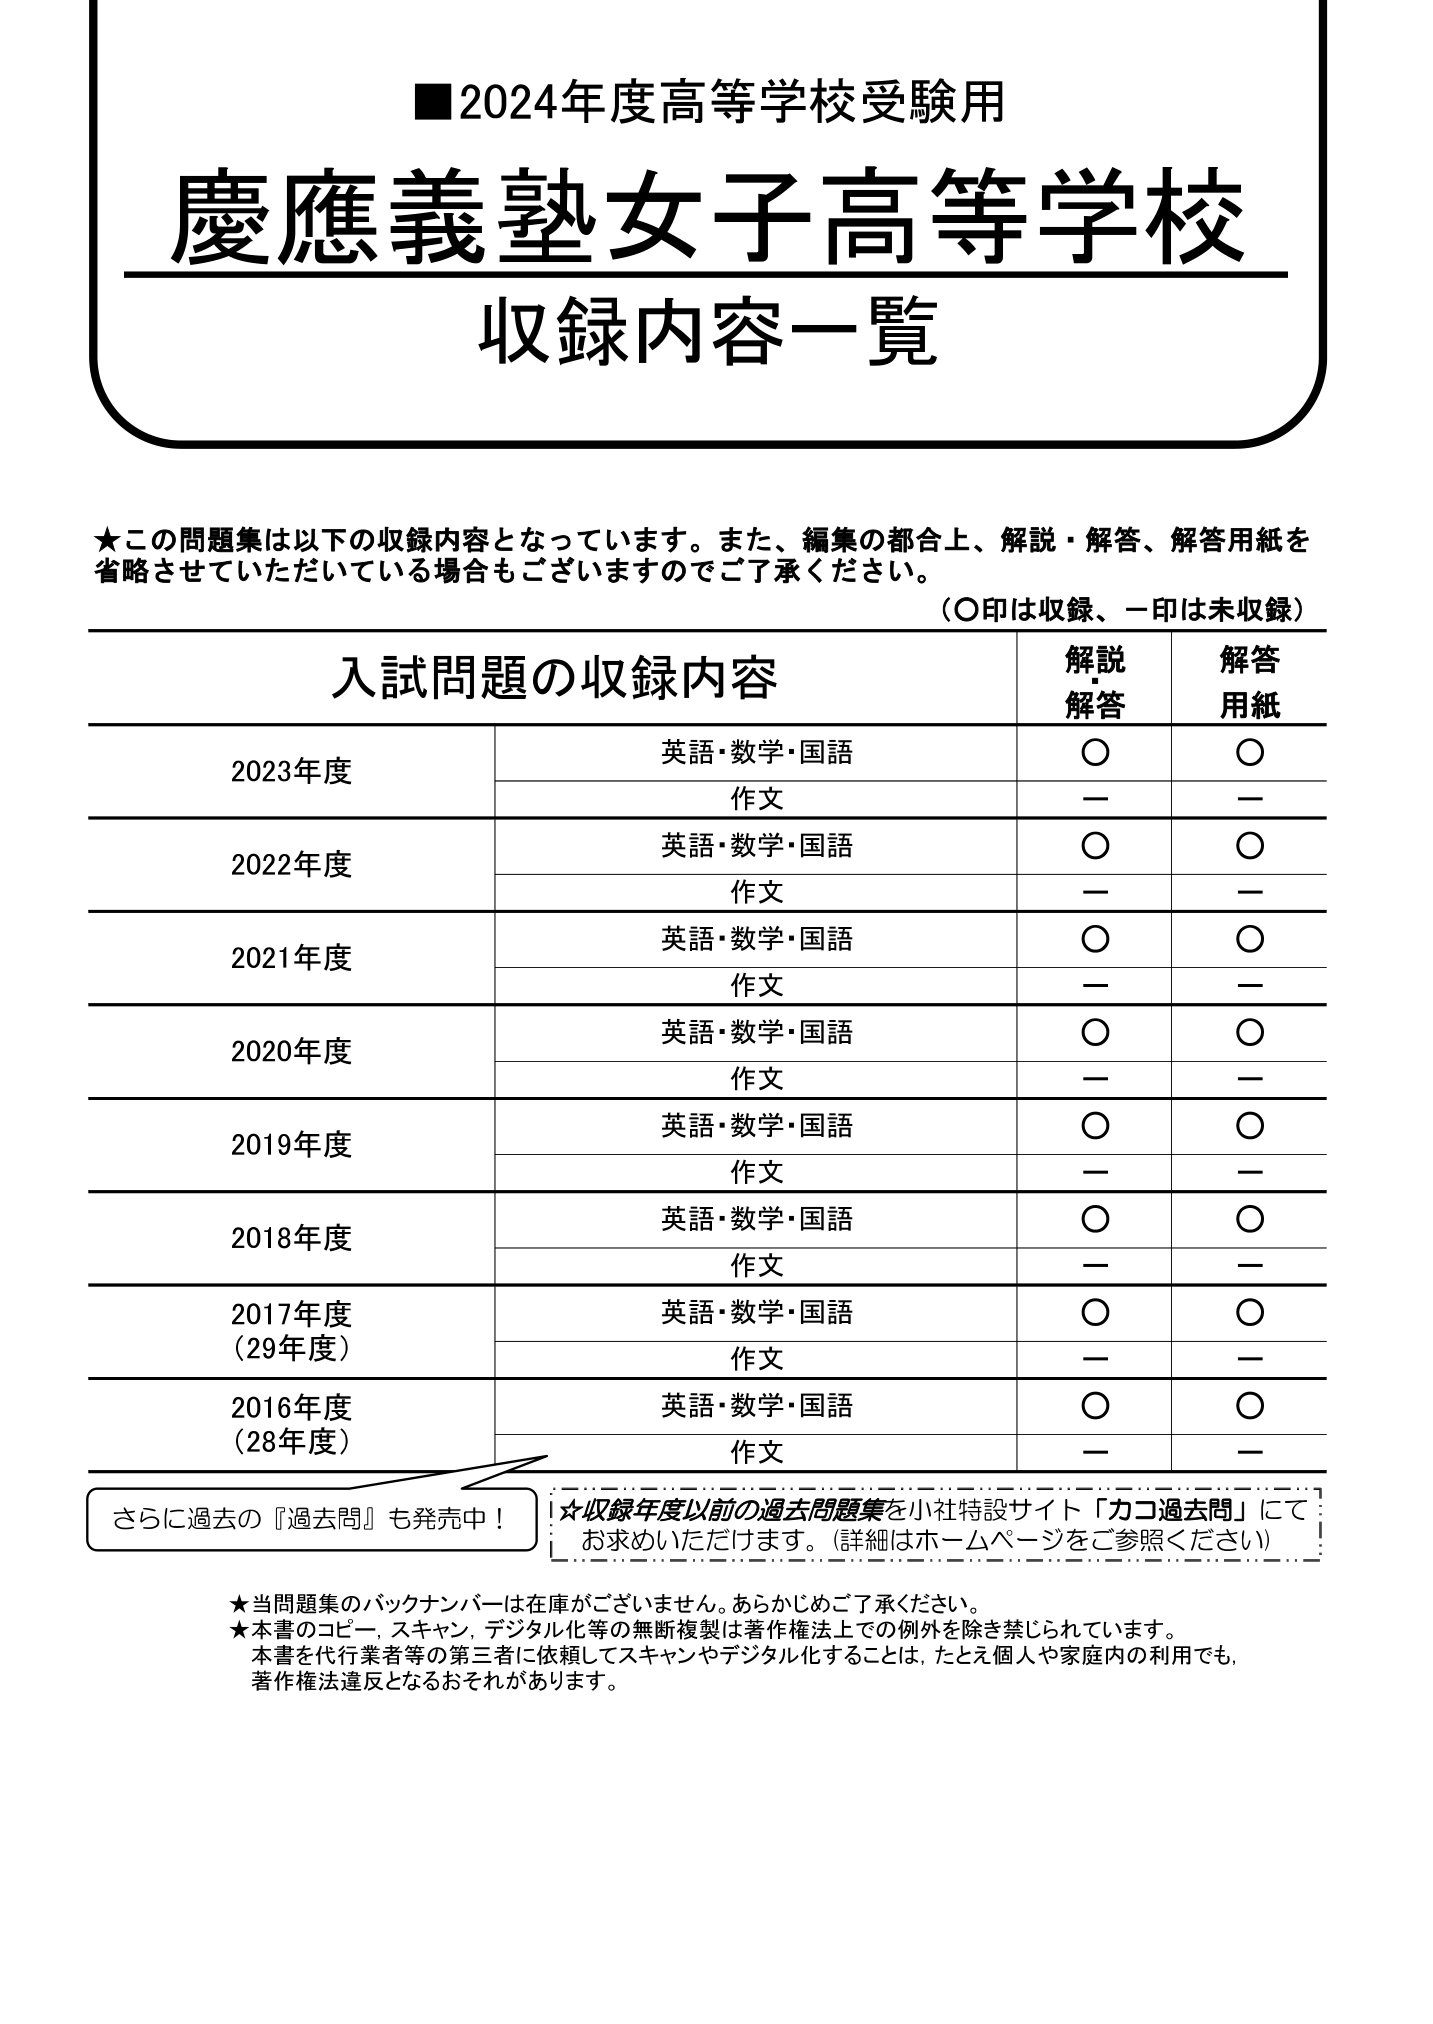 早稲田アカデミー 2021年度 慶應義塾女子高等学校 推薦入試 適性検査 